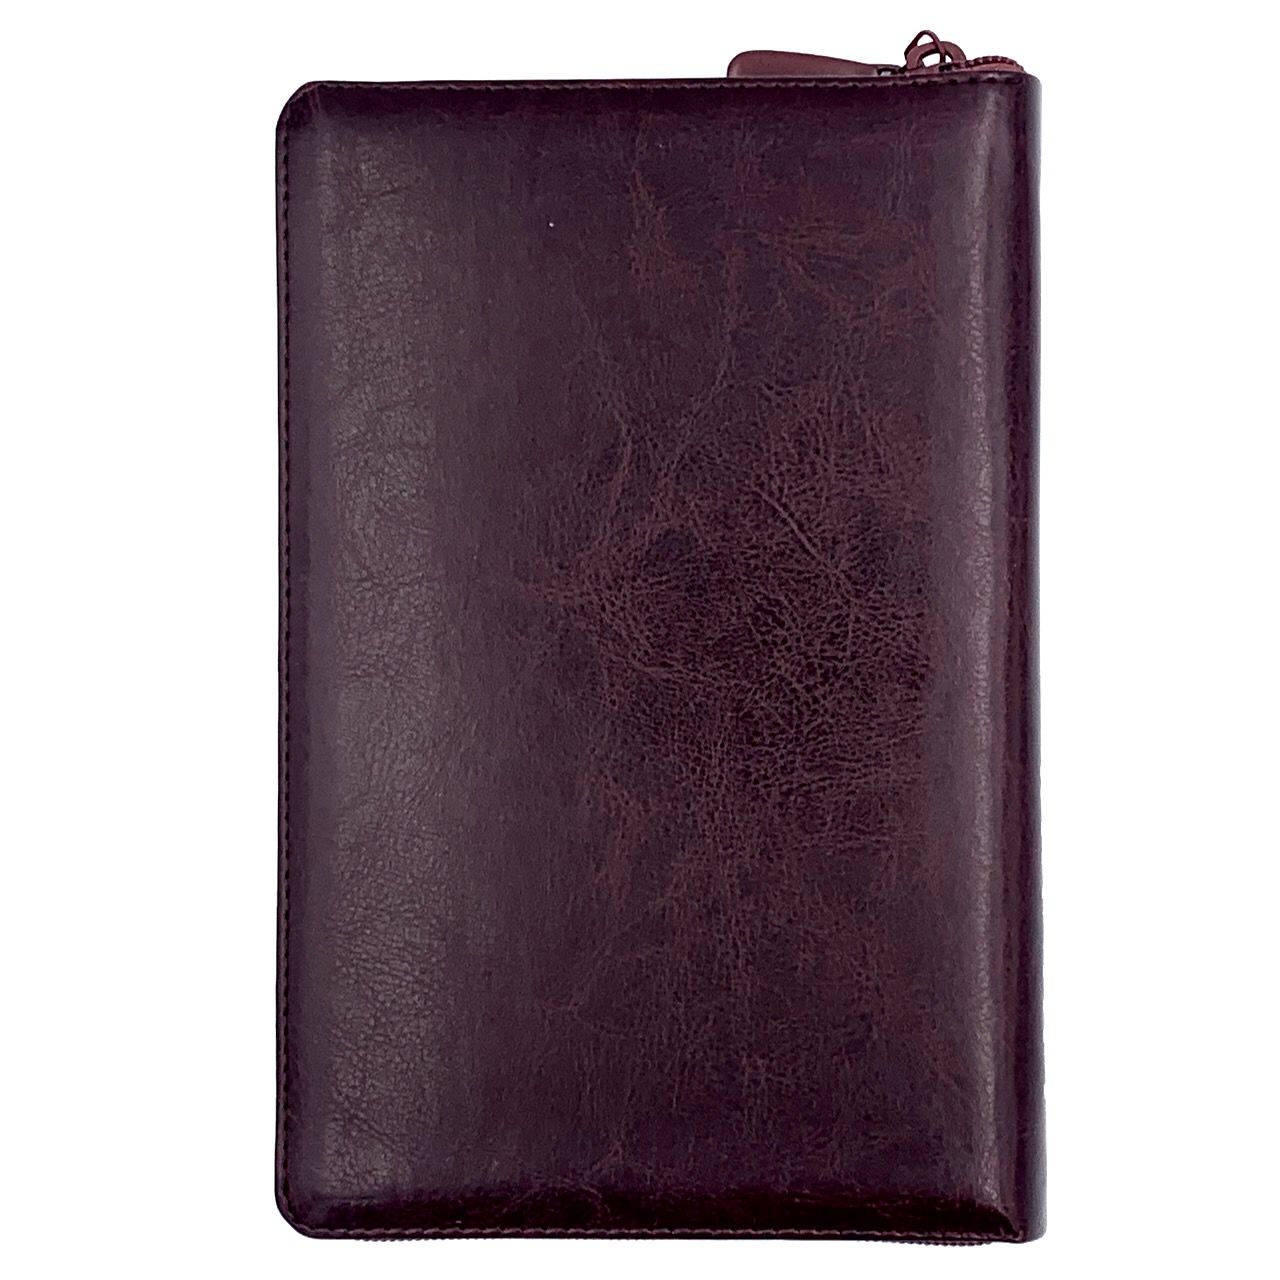 Библия 055z код 23055-6 надпись "Библия с вензелем", переплет из искусственной кожи на молнии, цвет темно-коричневый с оттенком бордо, средний формат, 143*220 мм